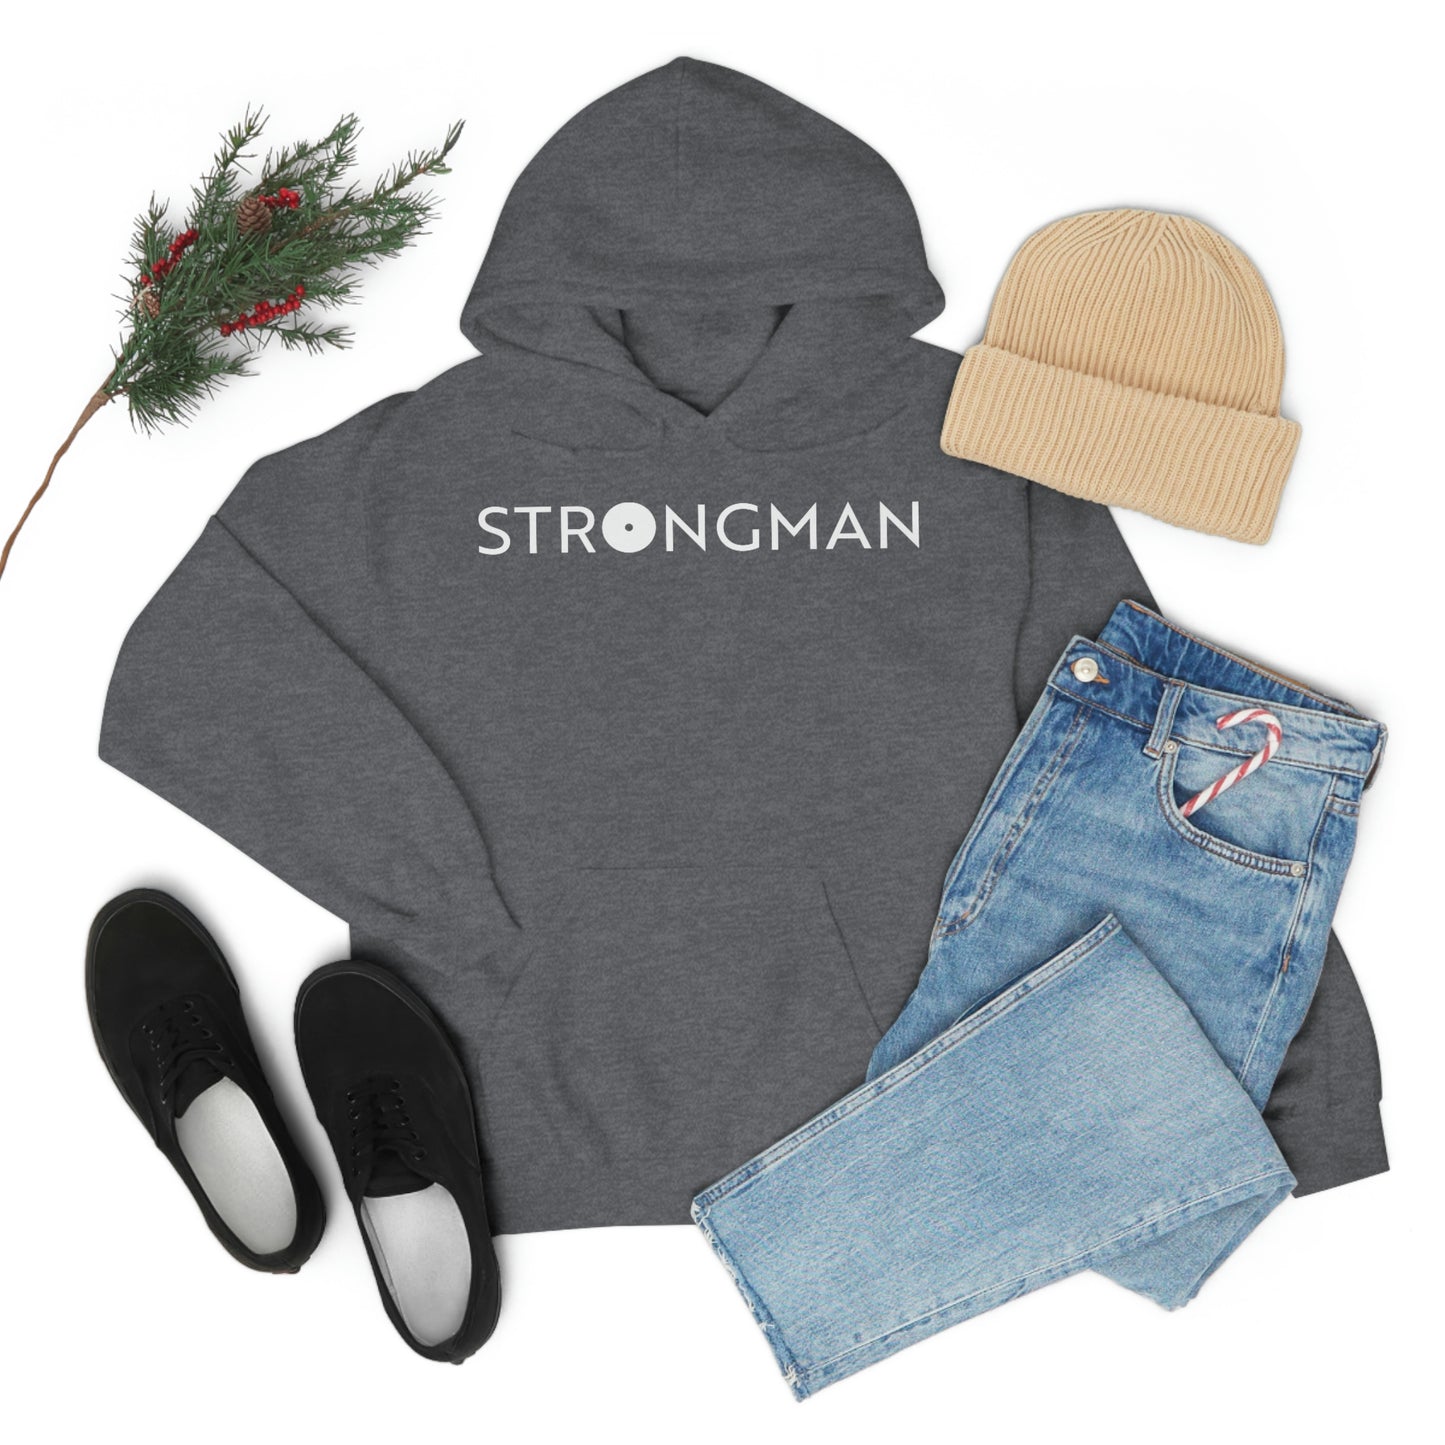 Strongman Gym Five Hooded Sweatshirt